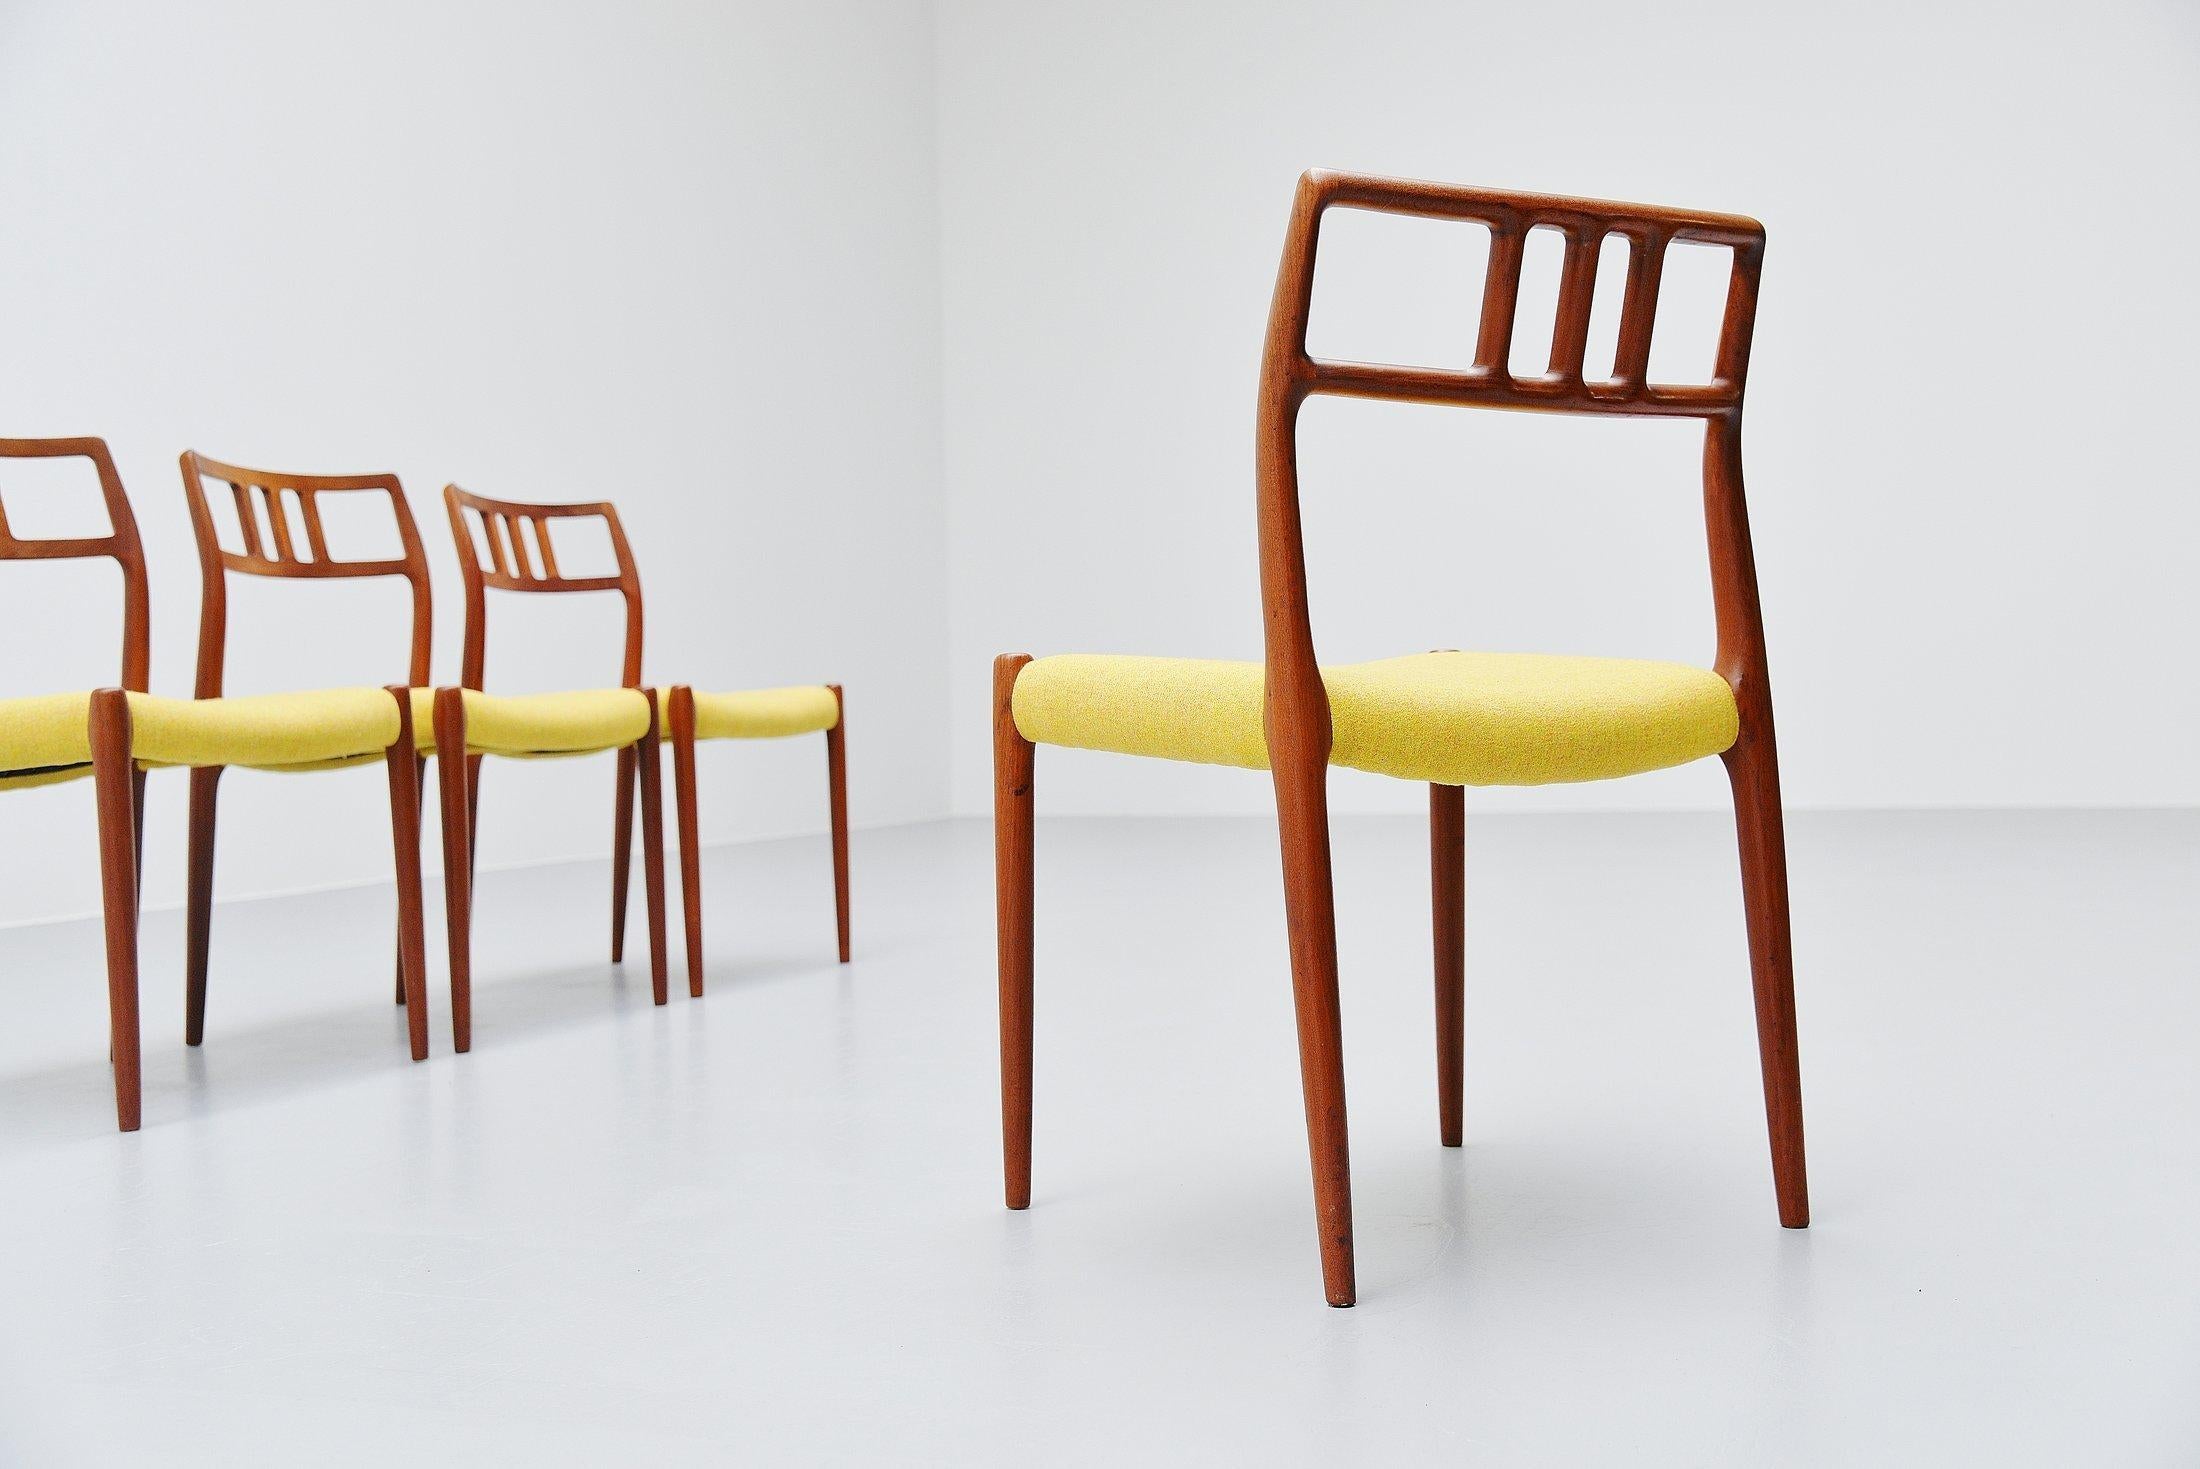 Upholstery Niels Møller Model 79 Teak Chairs, Denmark, 1966